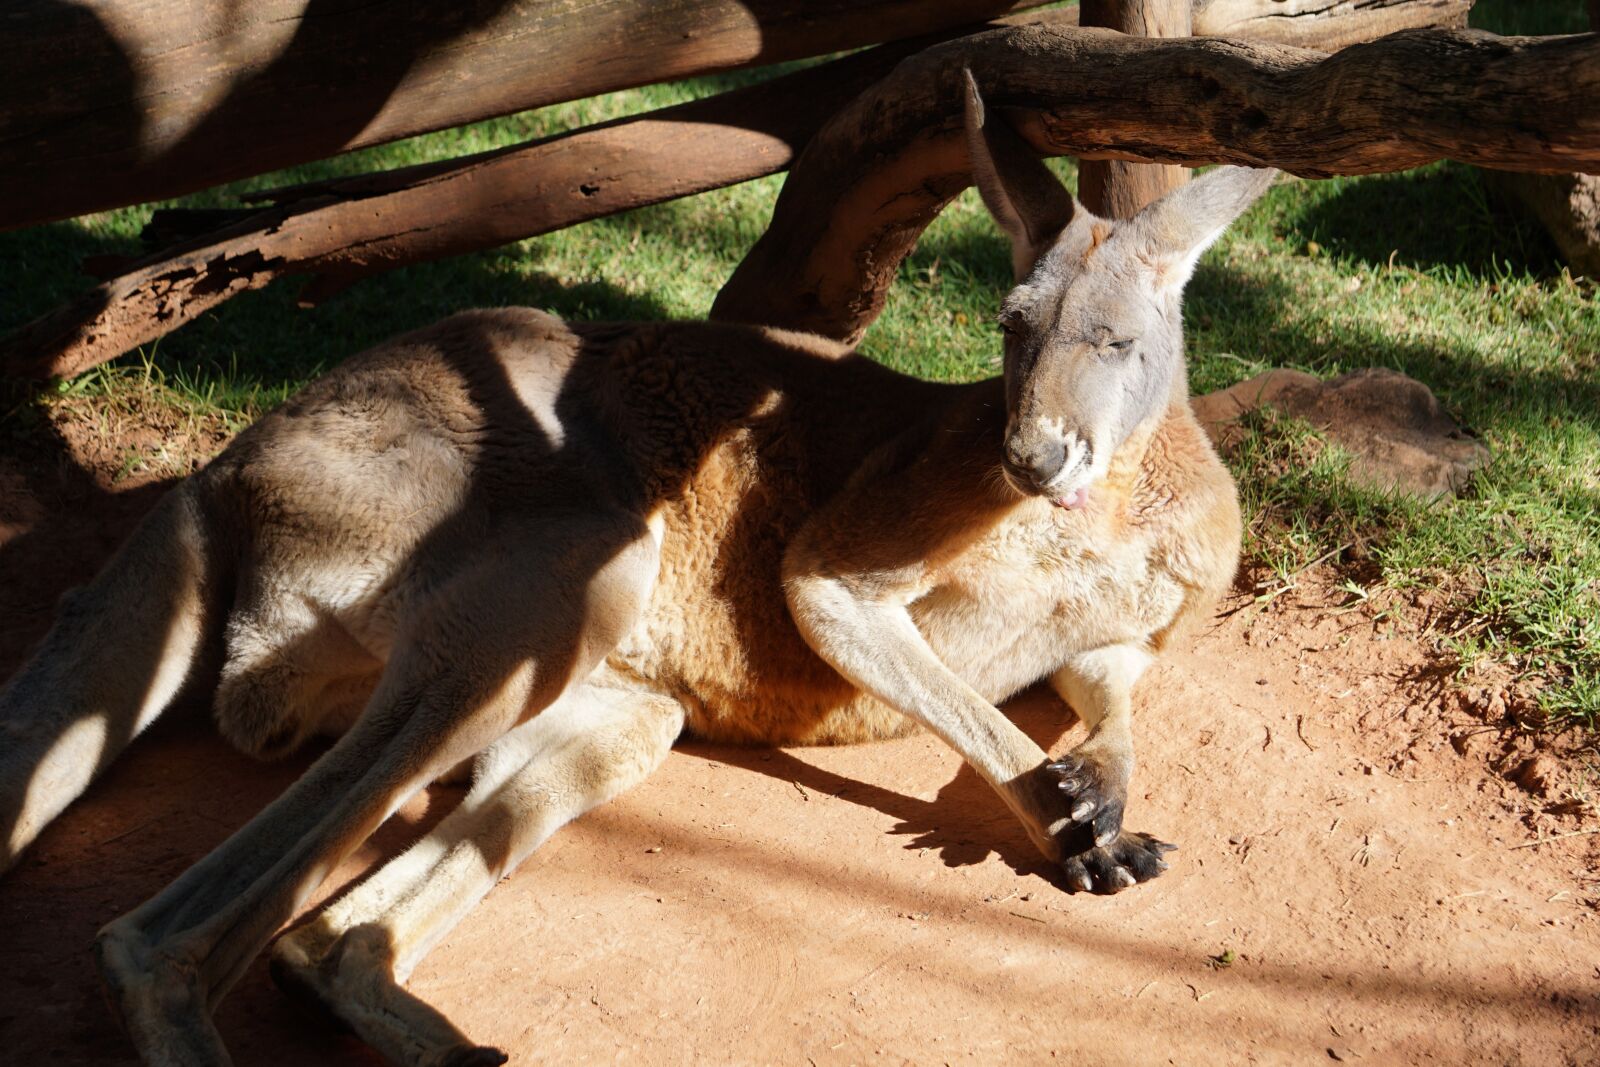 Sony a5100 + Sony E 55-210mm F4.5-6.3 OSS sample photo. Kangaroo, animal, animals photography